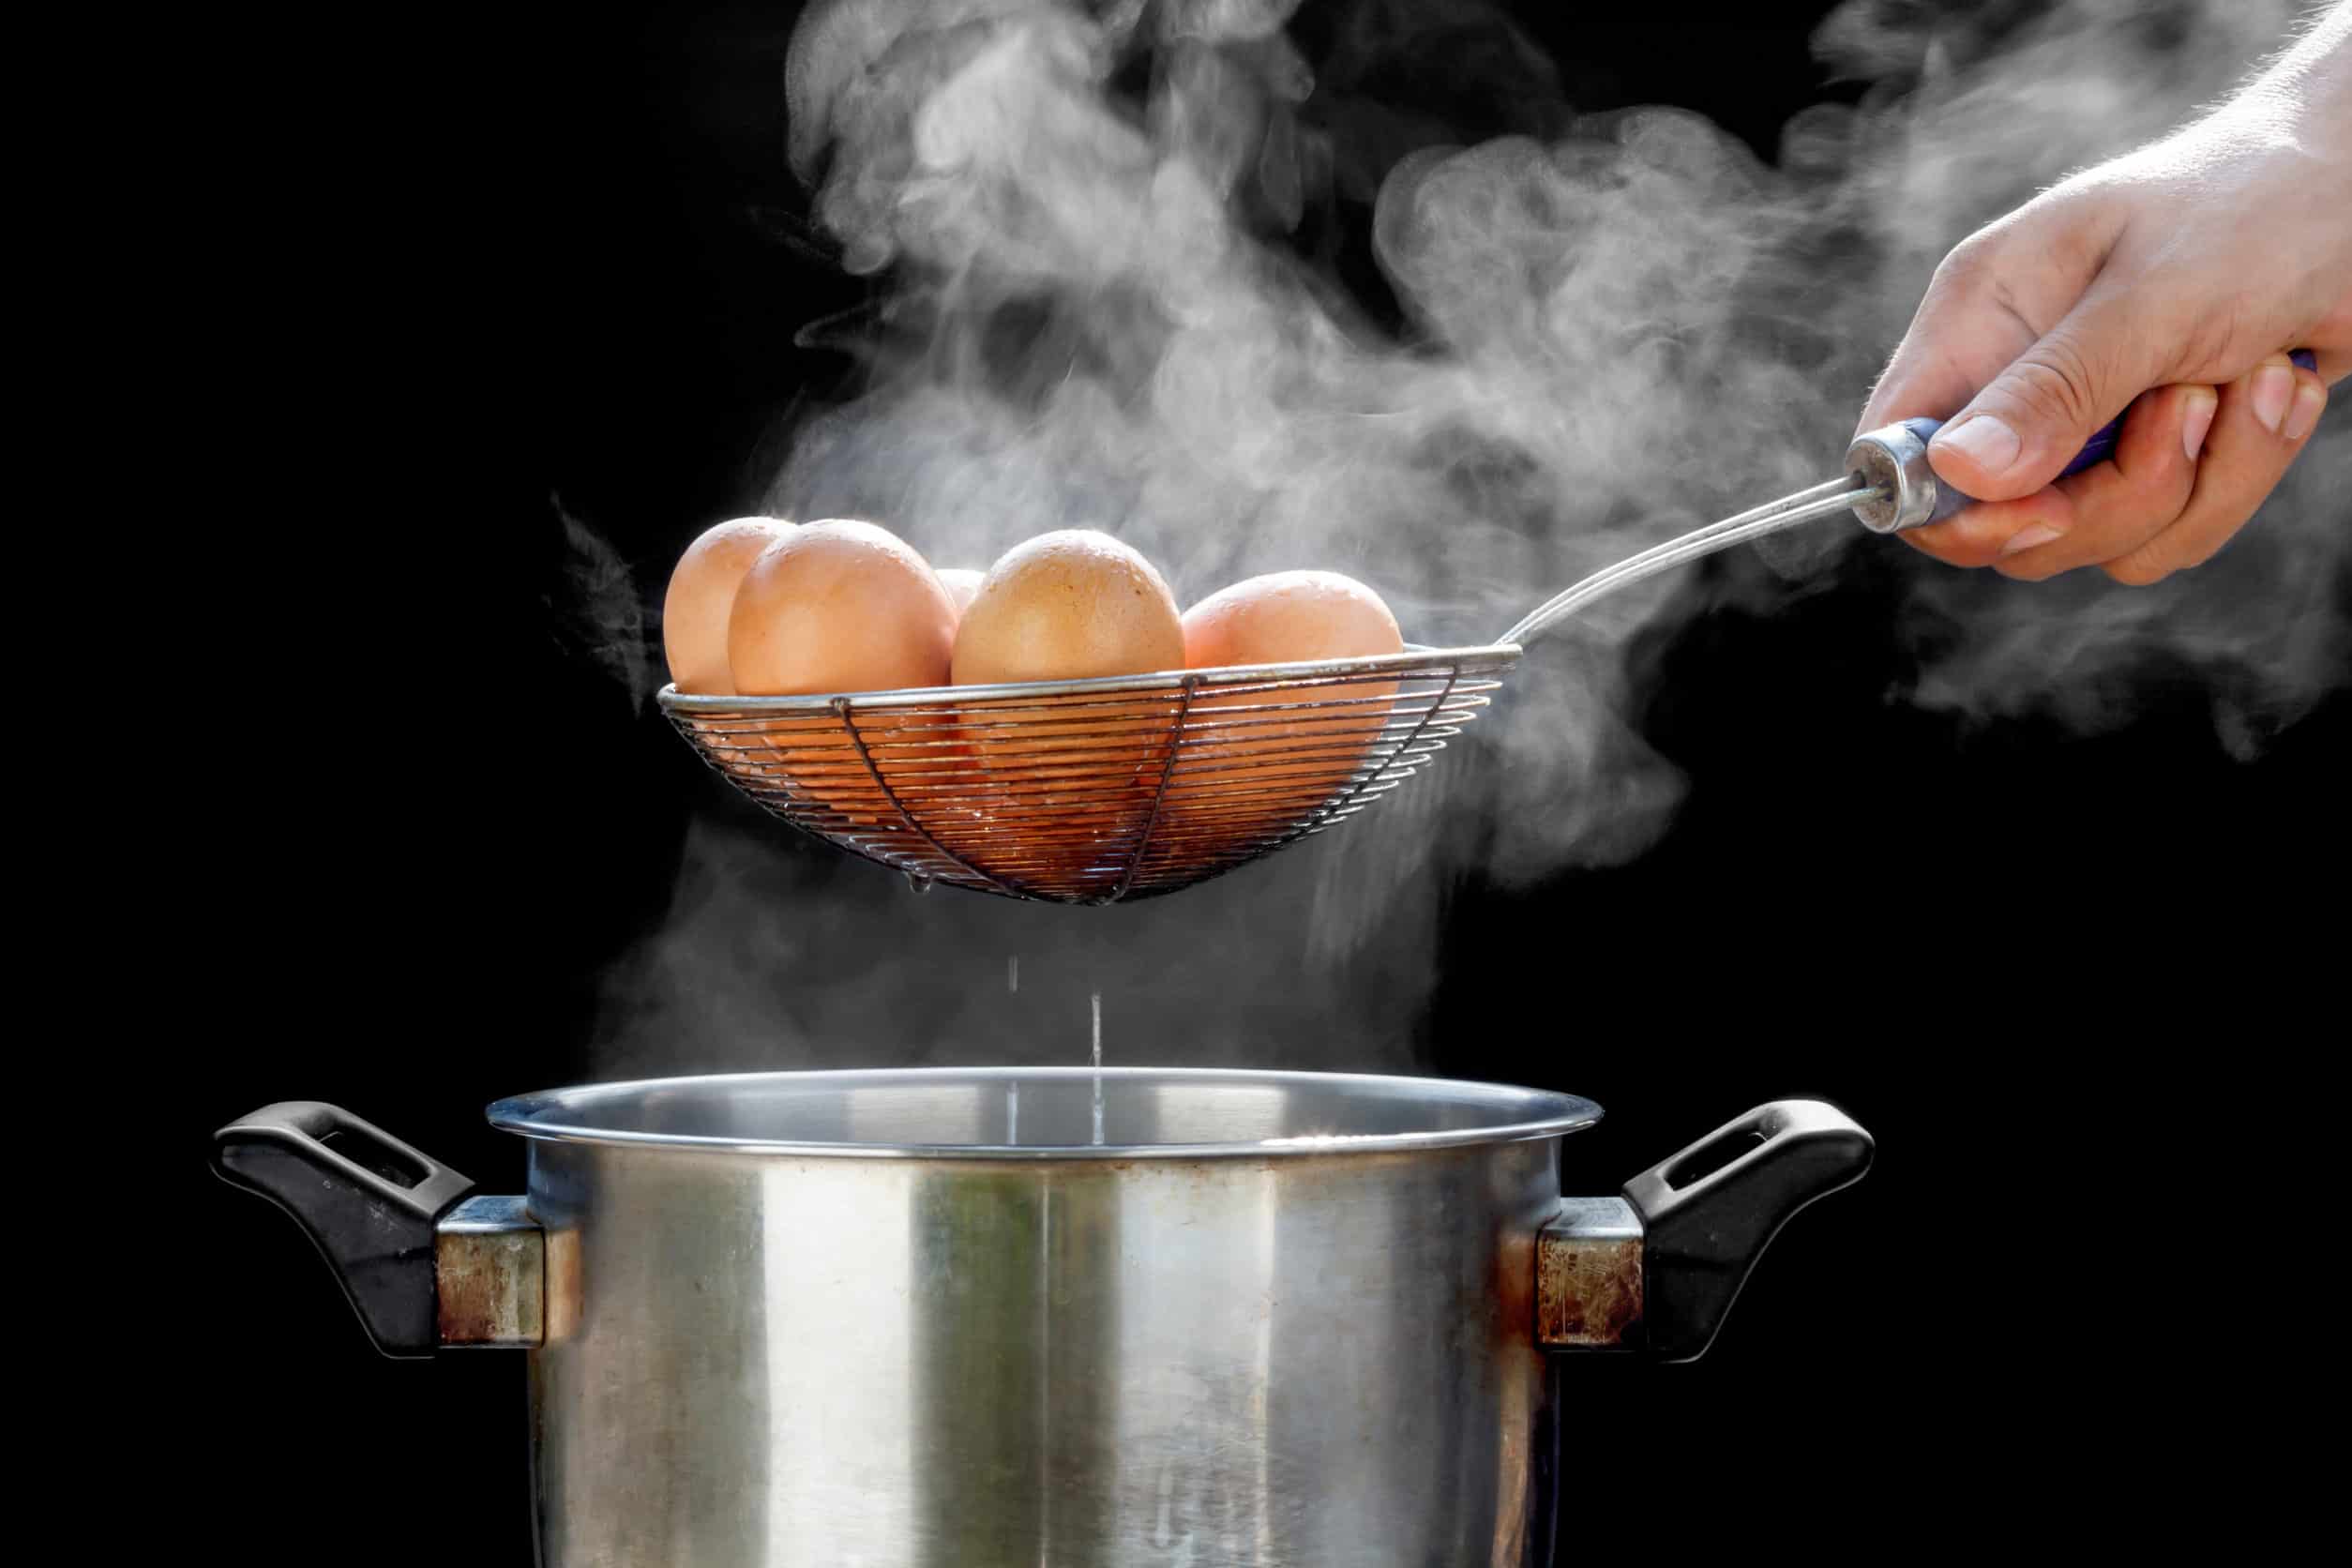 Steam boil eggs фото 94